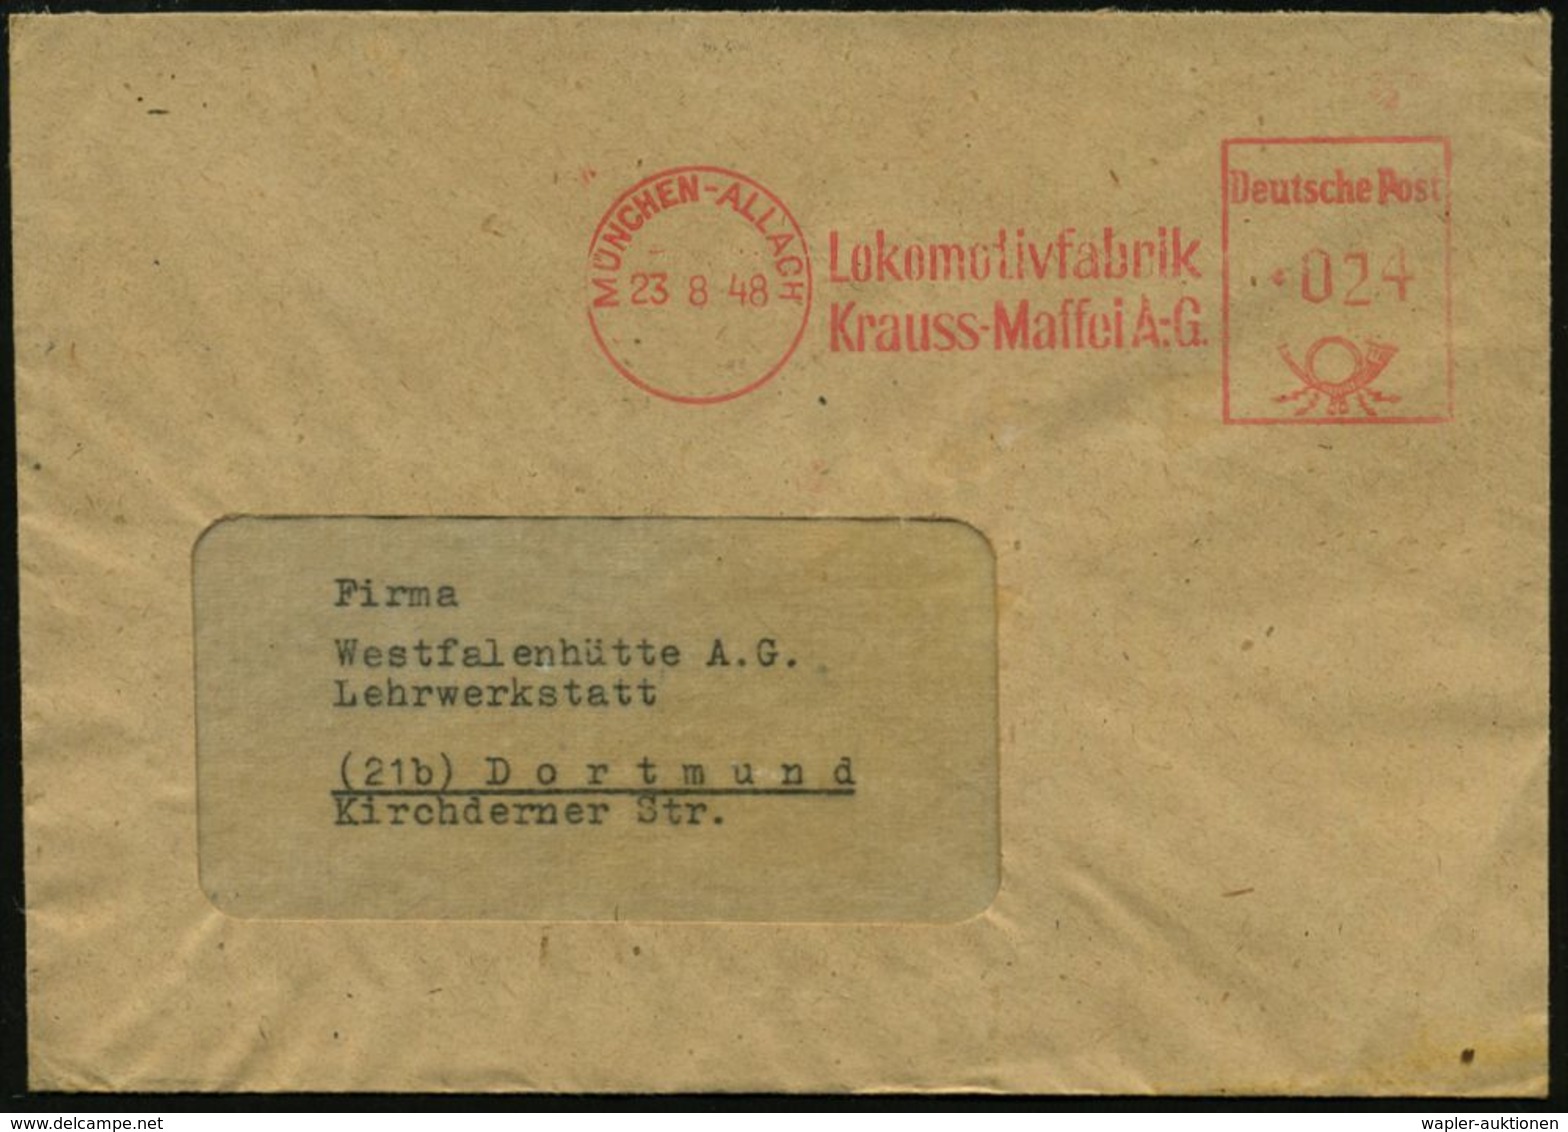 MÜNCHEN-ALLACH/ Lokomotivfabrik/ Krauss-Maffei A.G. 1948 (23.8.) AFS (rs. Abs.-Vordr., Logo) Klar Gest. Firmen-Bf. = Her - Eisenbahnen